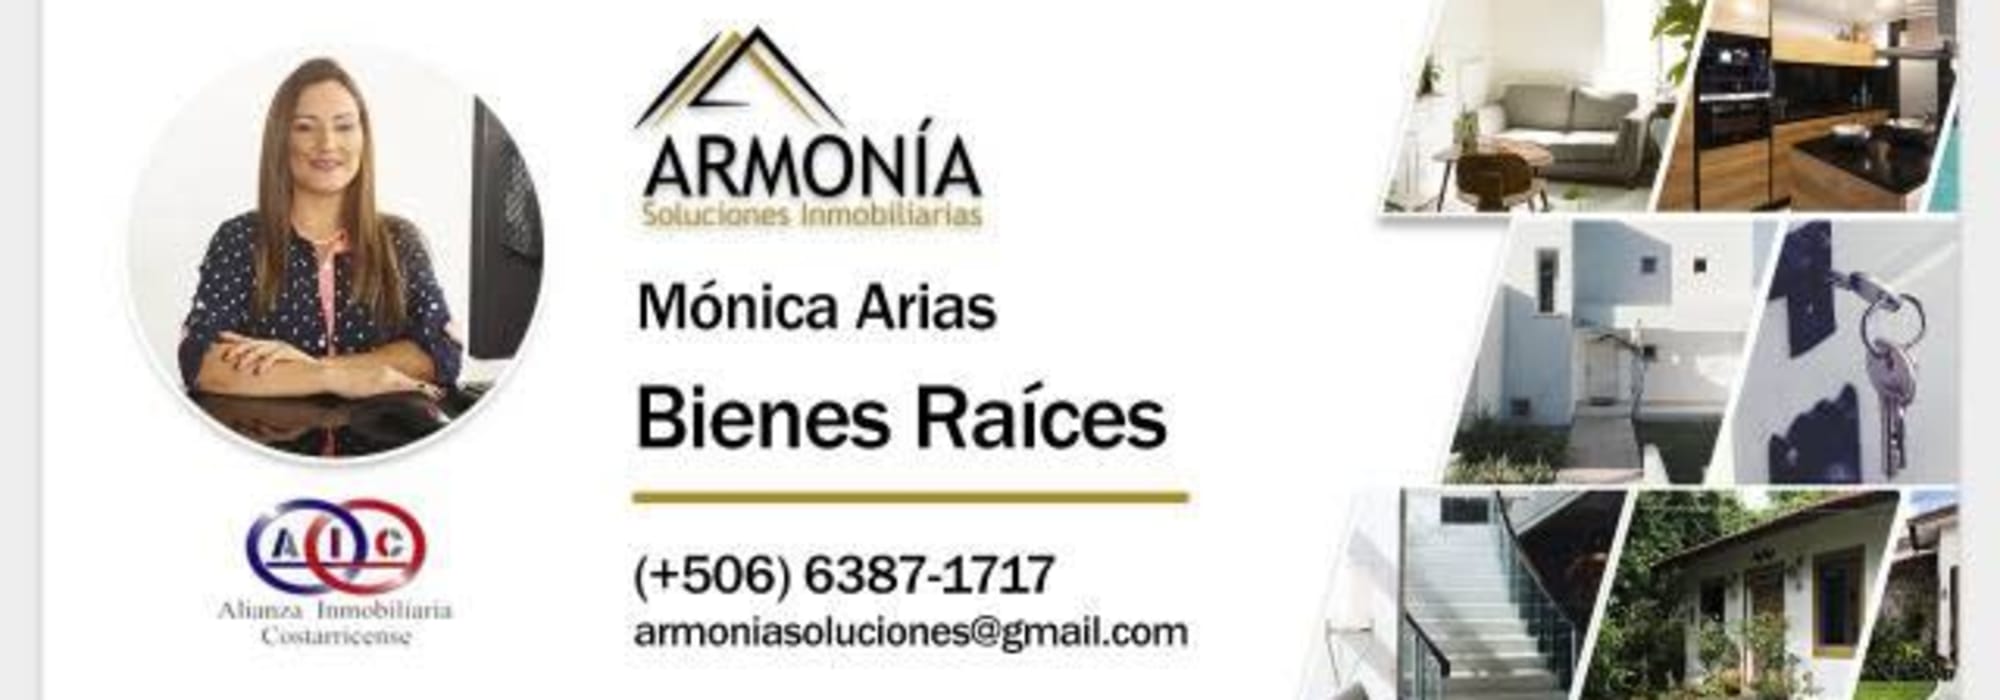 Monica Arias